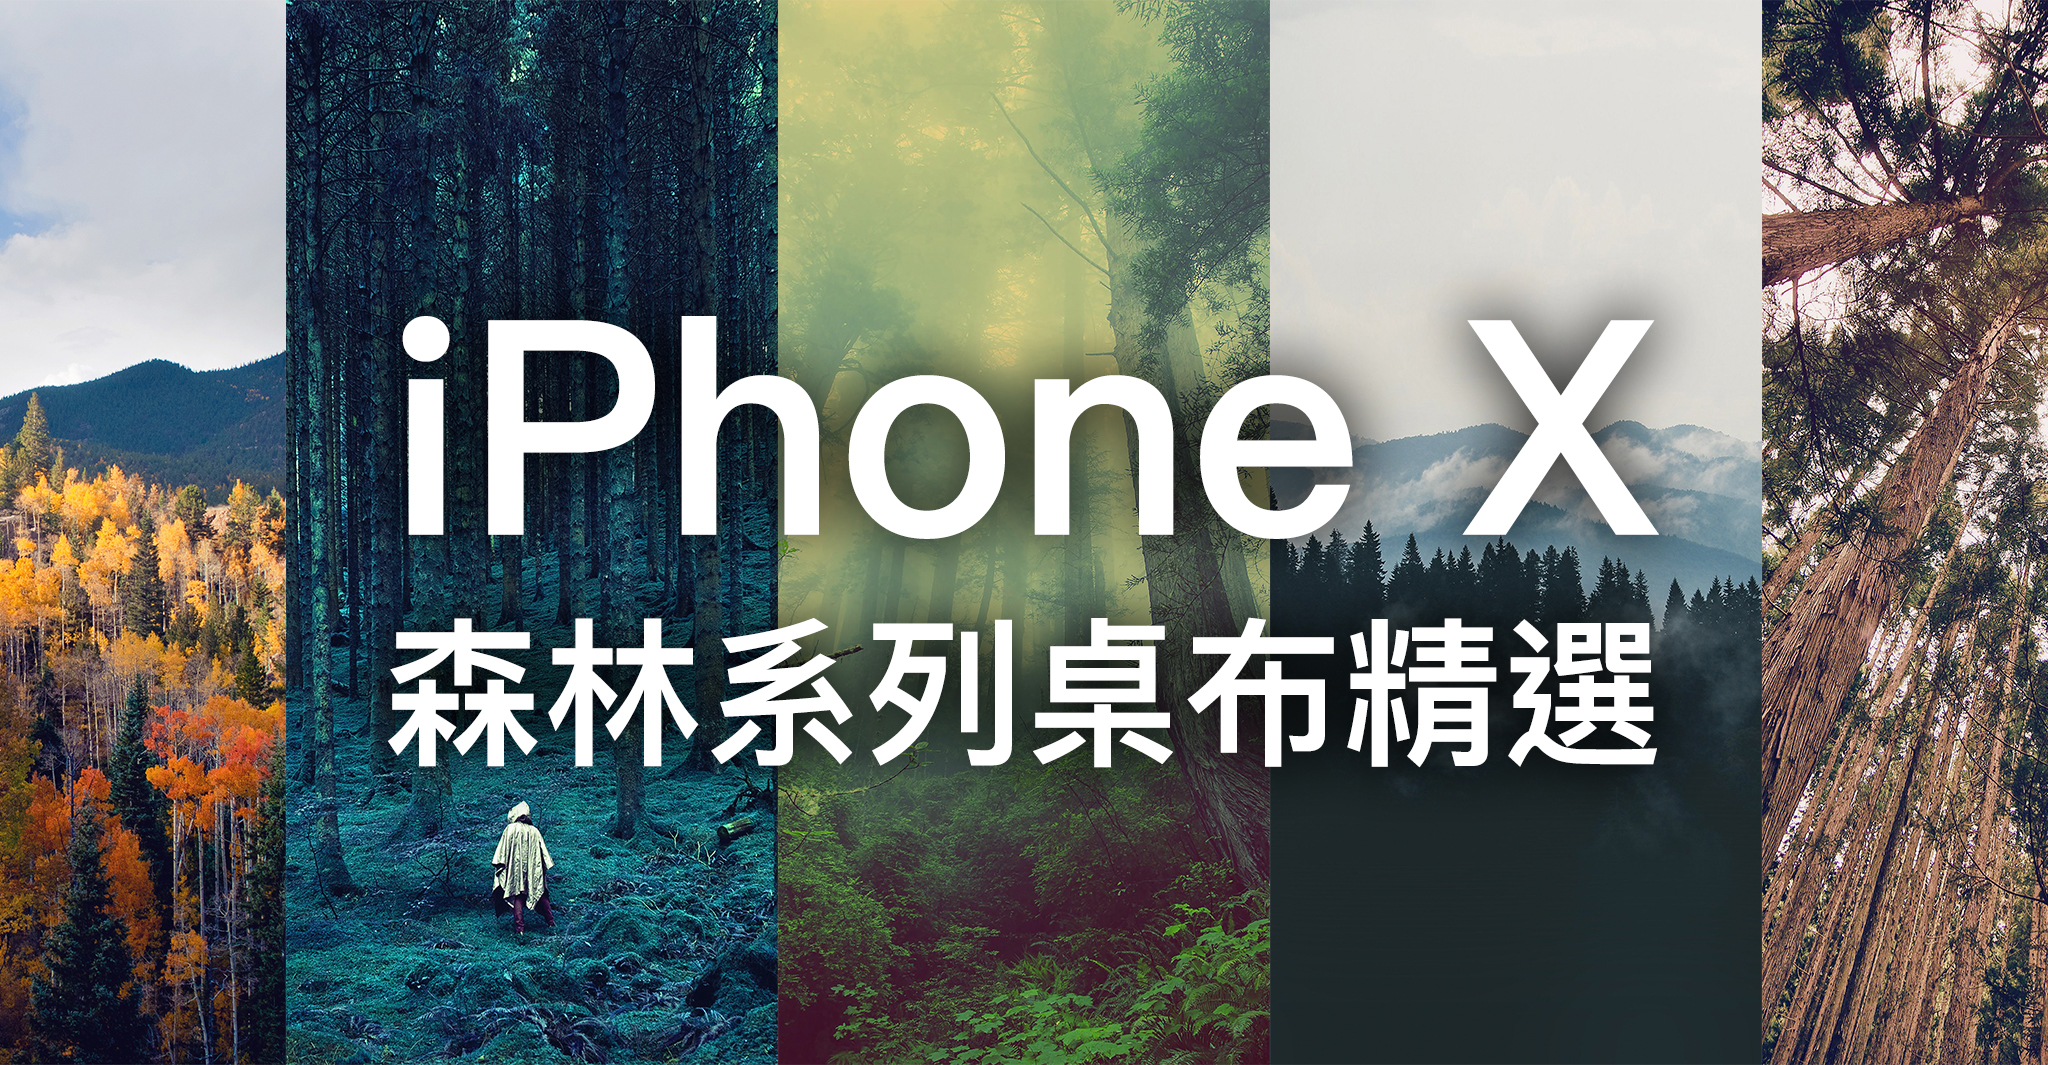 Iphone X 桌布下載 精選 張森林系列iphone X 桌布 蘋果仁 果仁iphone Ios 好物推薦科技媒體